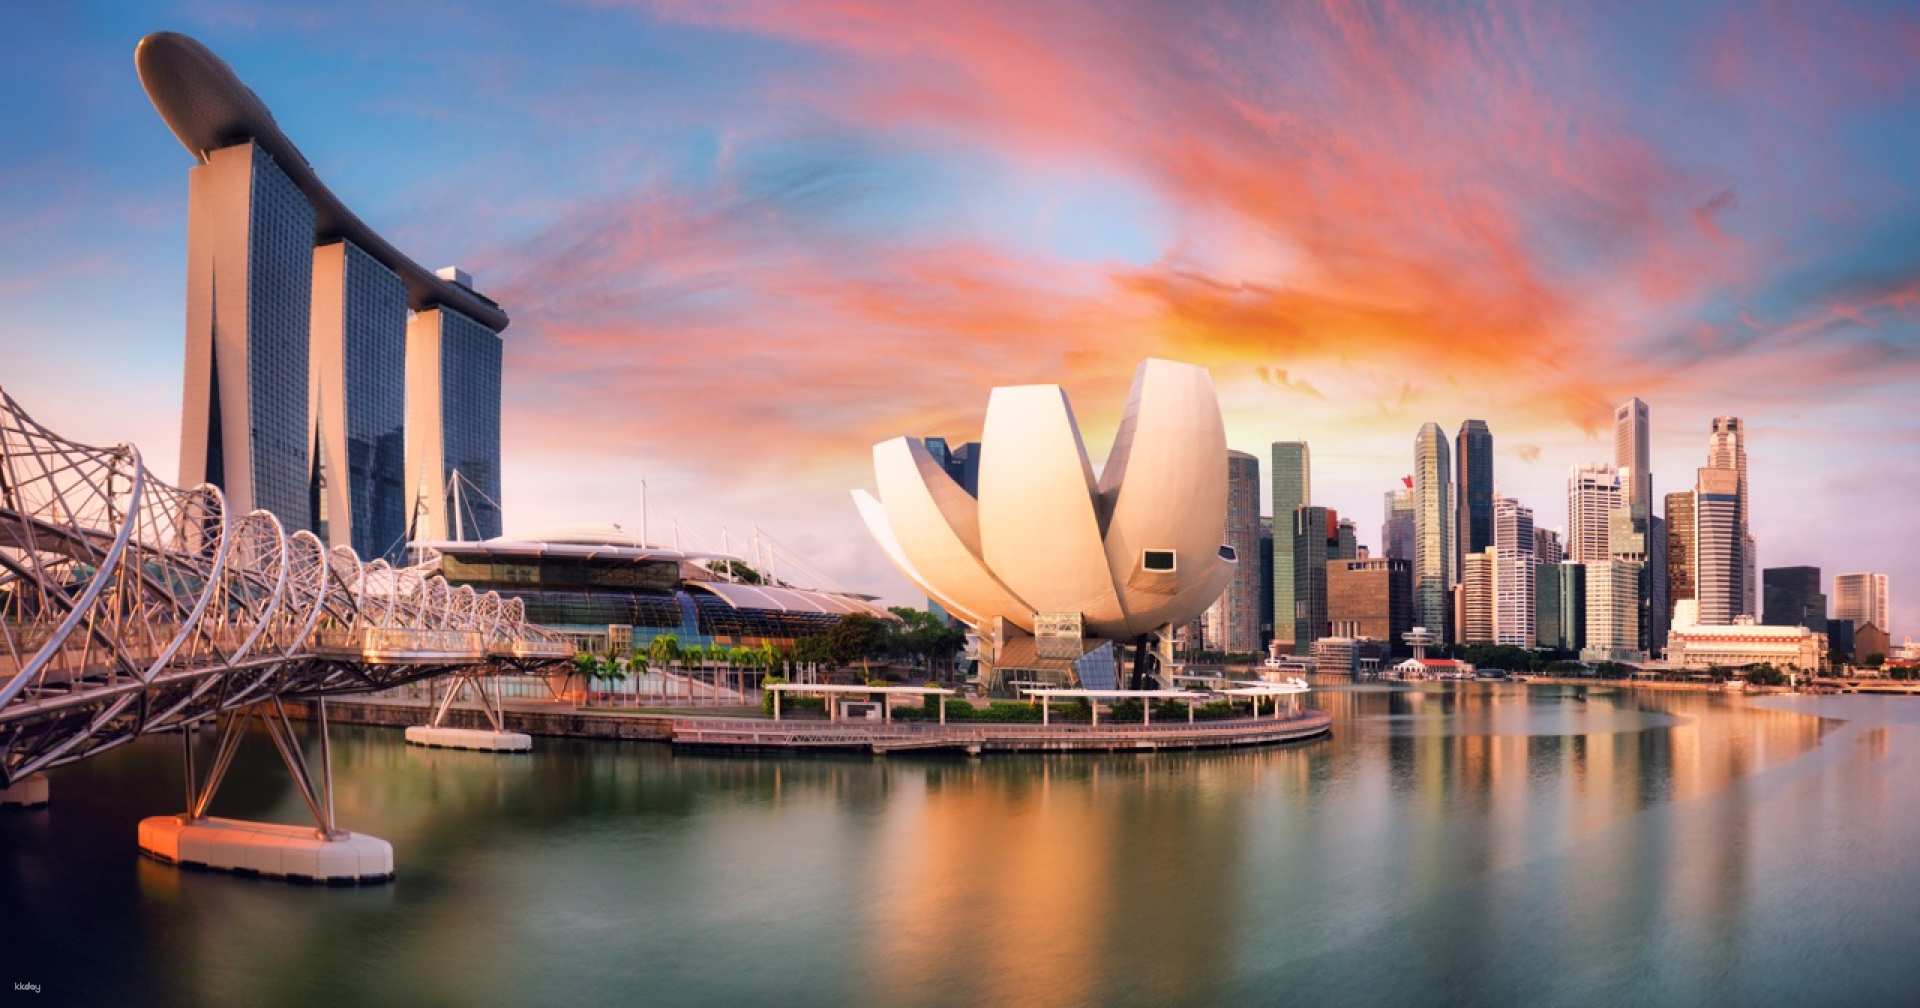 新加坡-濱海灣金沙藝術科學博物館門票